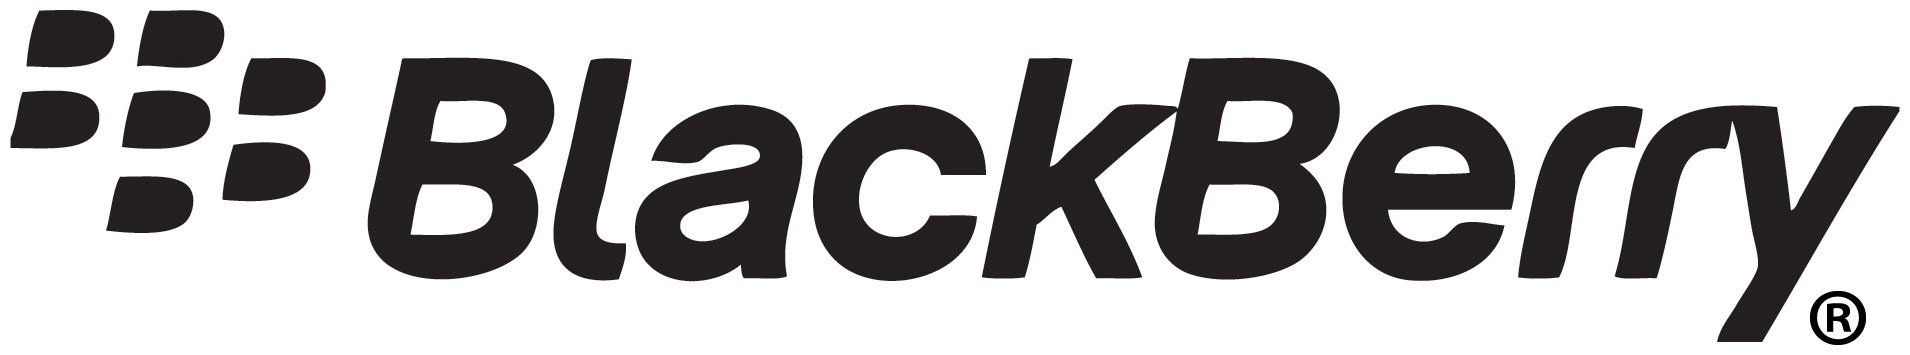 http://www.technologybloggers.org/wp-content/uploads/2011/10/Blackberry-Logo.jpg